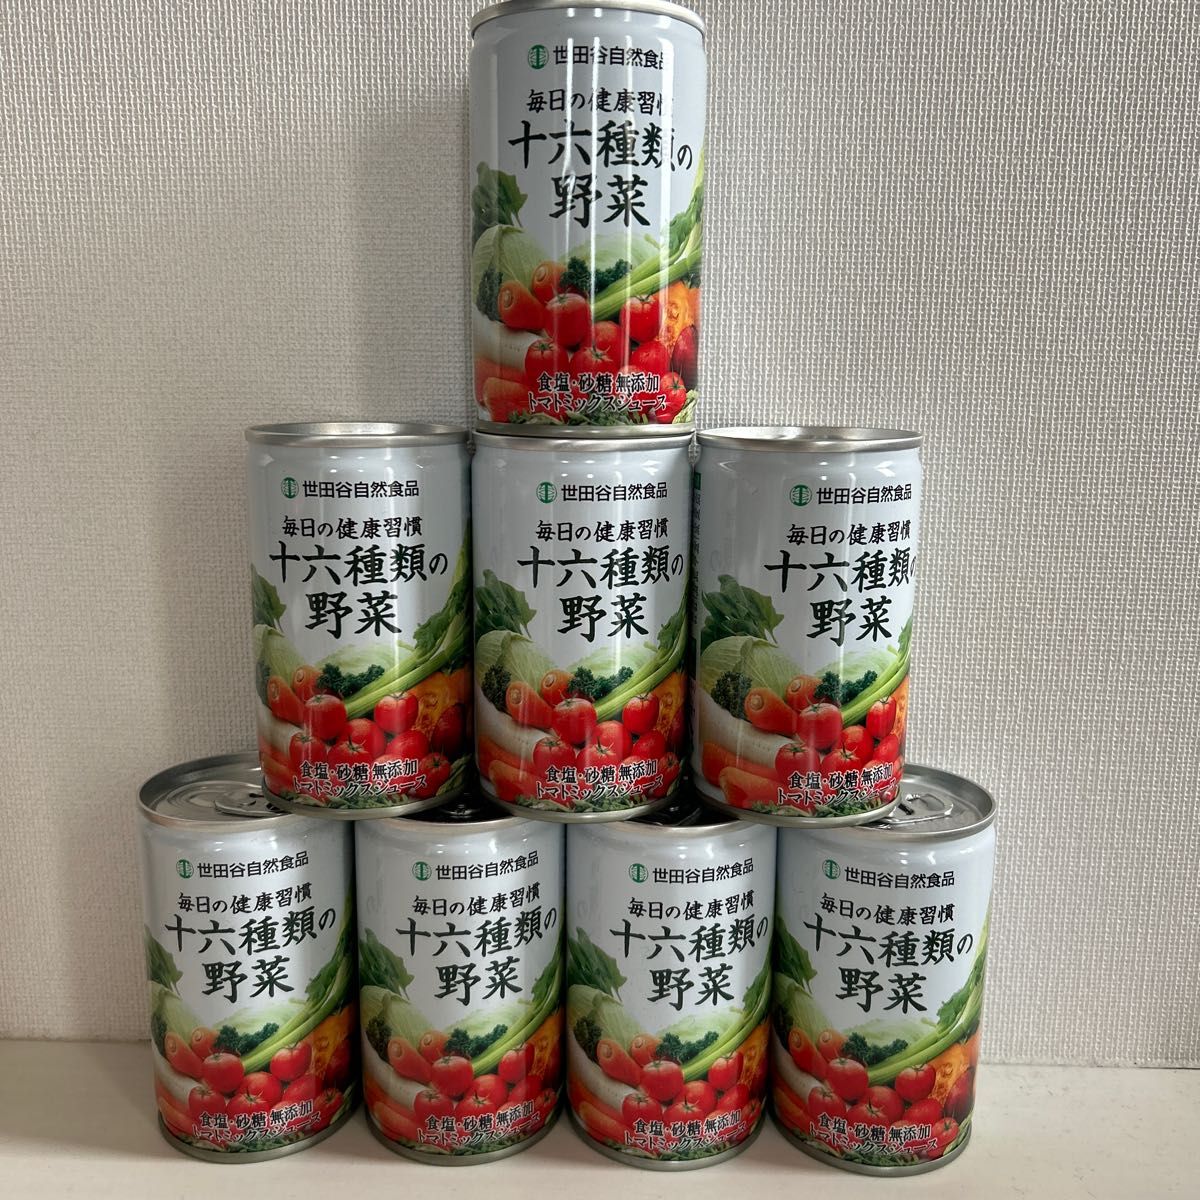 十六種類の野菜 トマトミックスジュース 世田谷自然食品 8本セット - 酒